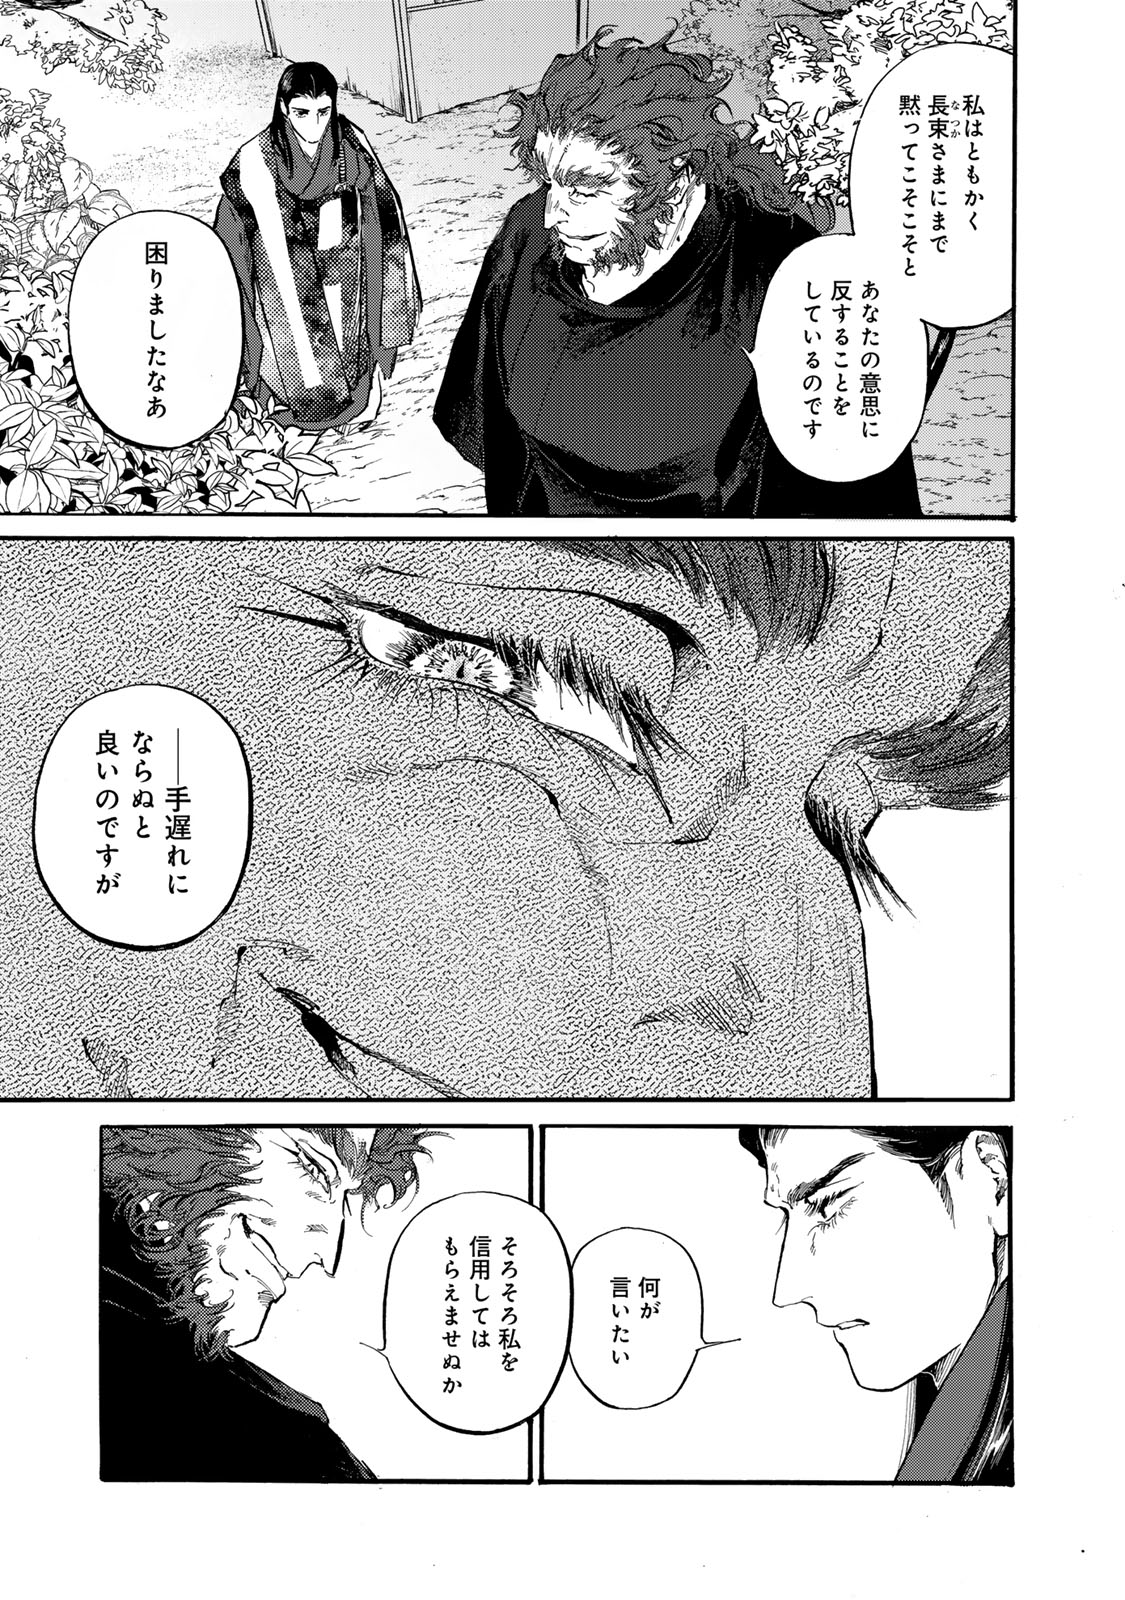 Karasu wa Aruji wo Erabanai - Chapter 39 - Page 3